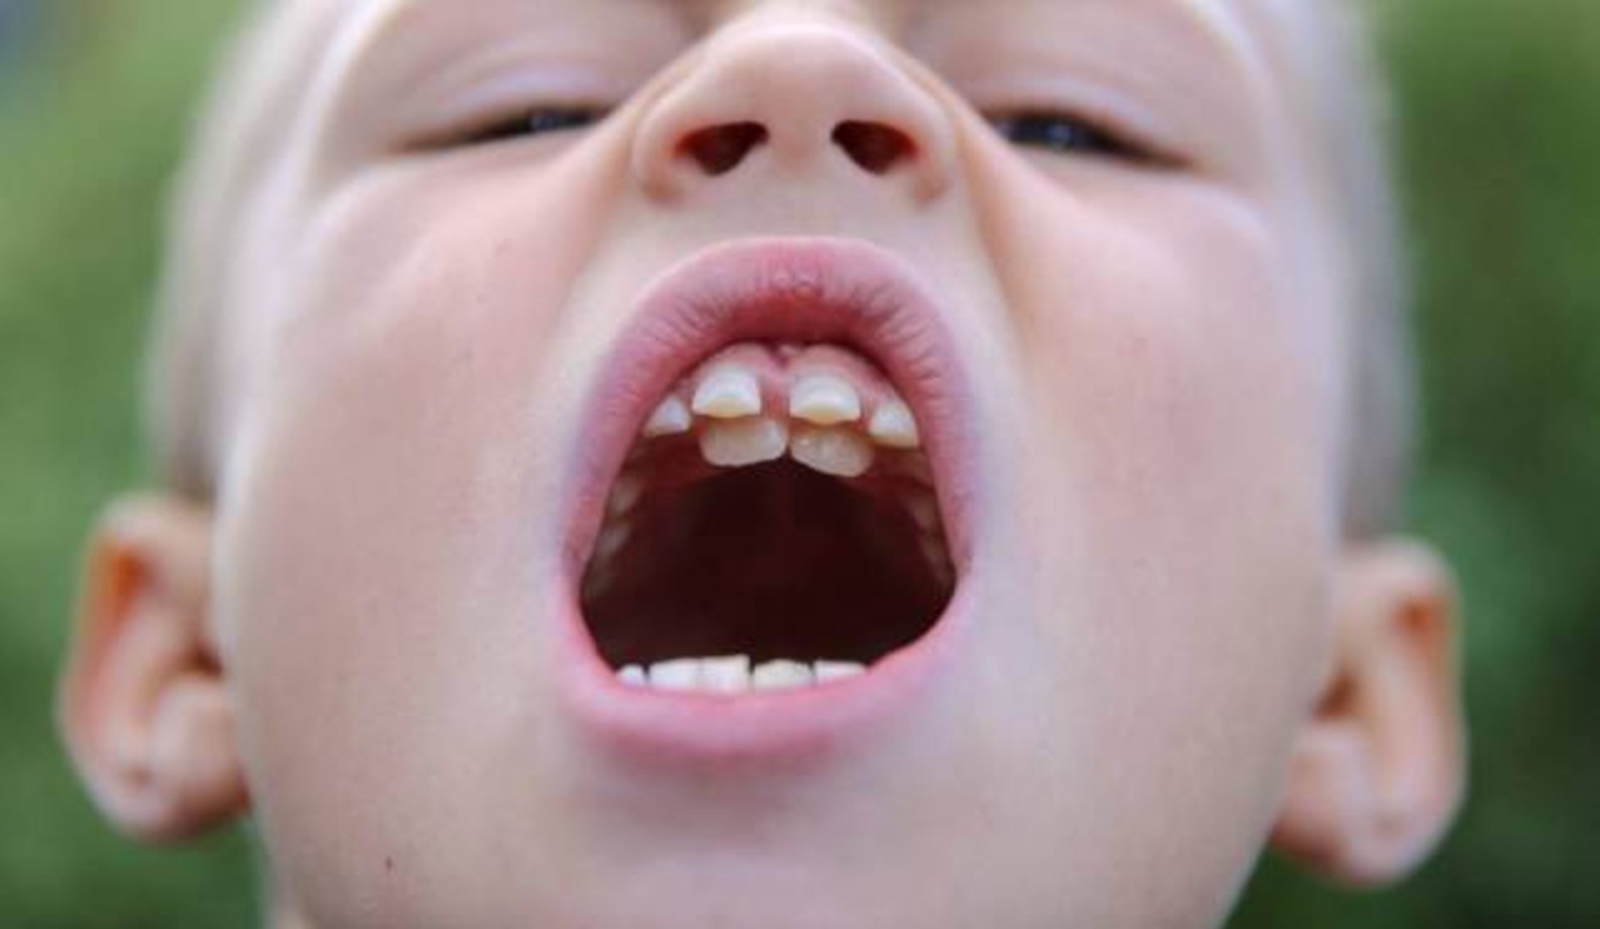  Hàm răng mọc lệch - Tìm hiểu về vấn đề này và các phương pháp điều trị